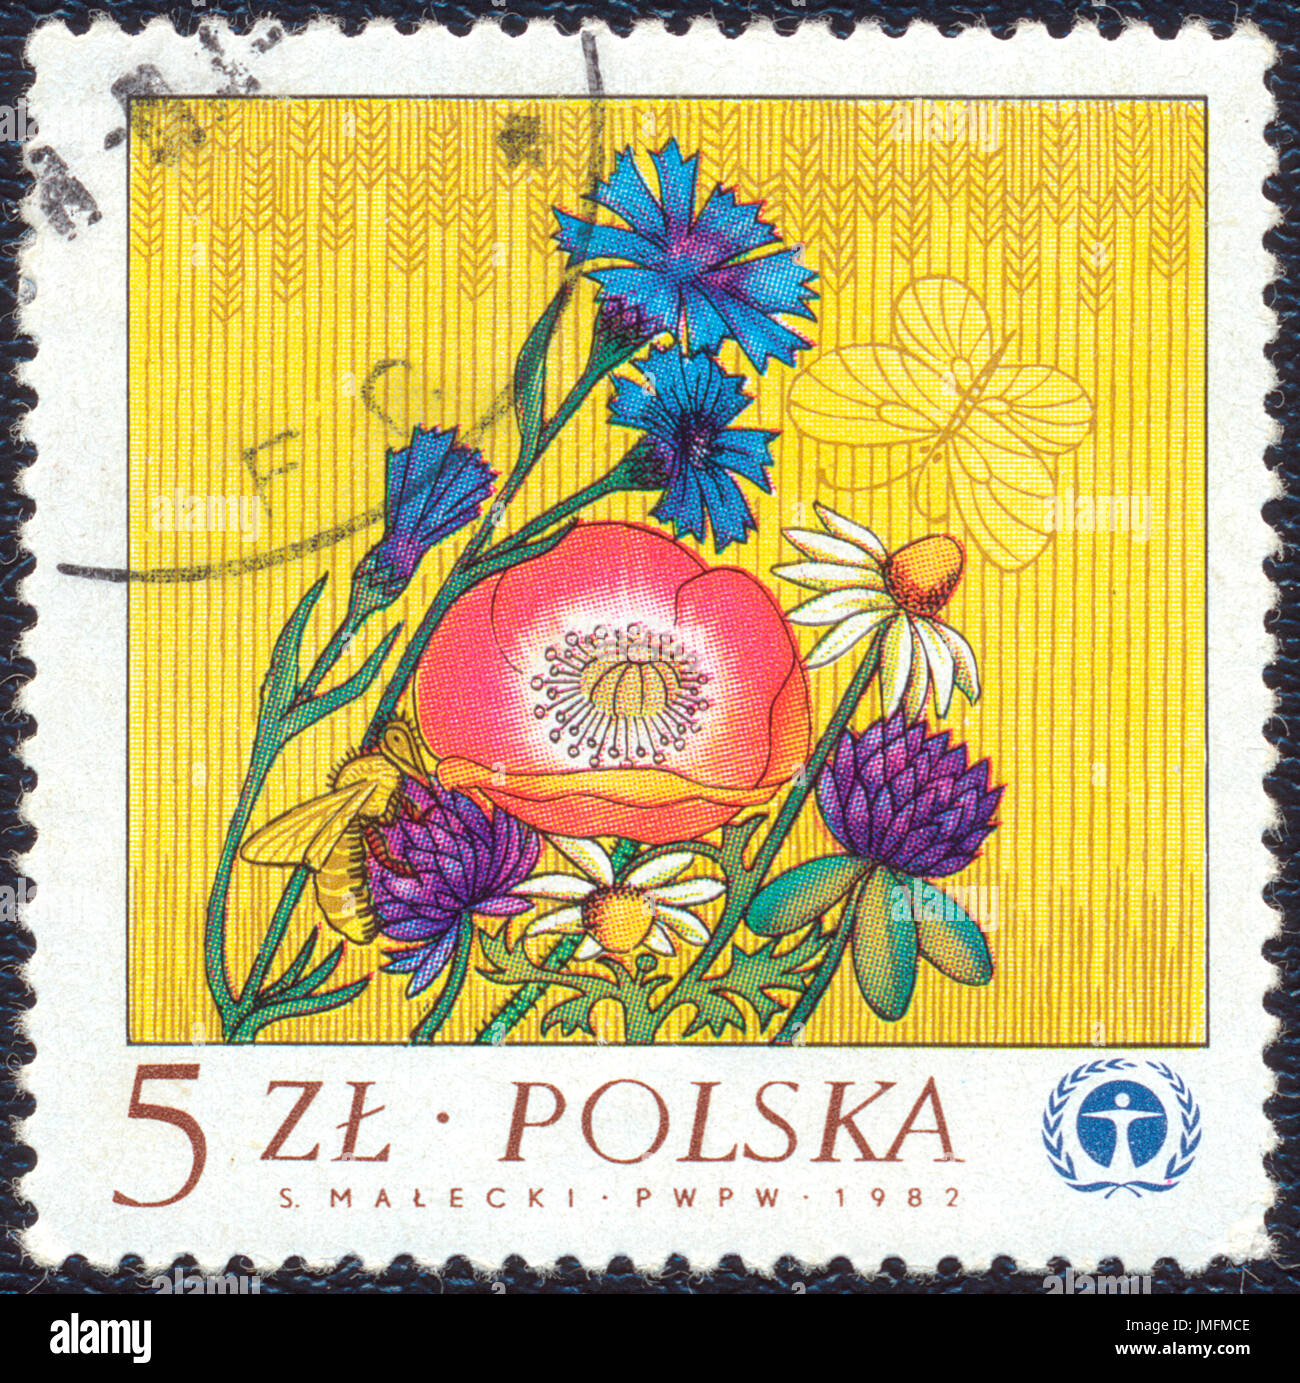 Polonia - 1982: francobollo stampato in Polonia mostra fiori diversi. Timbro stampato dal polacco Post circa 1982 Foto Stock